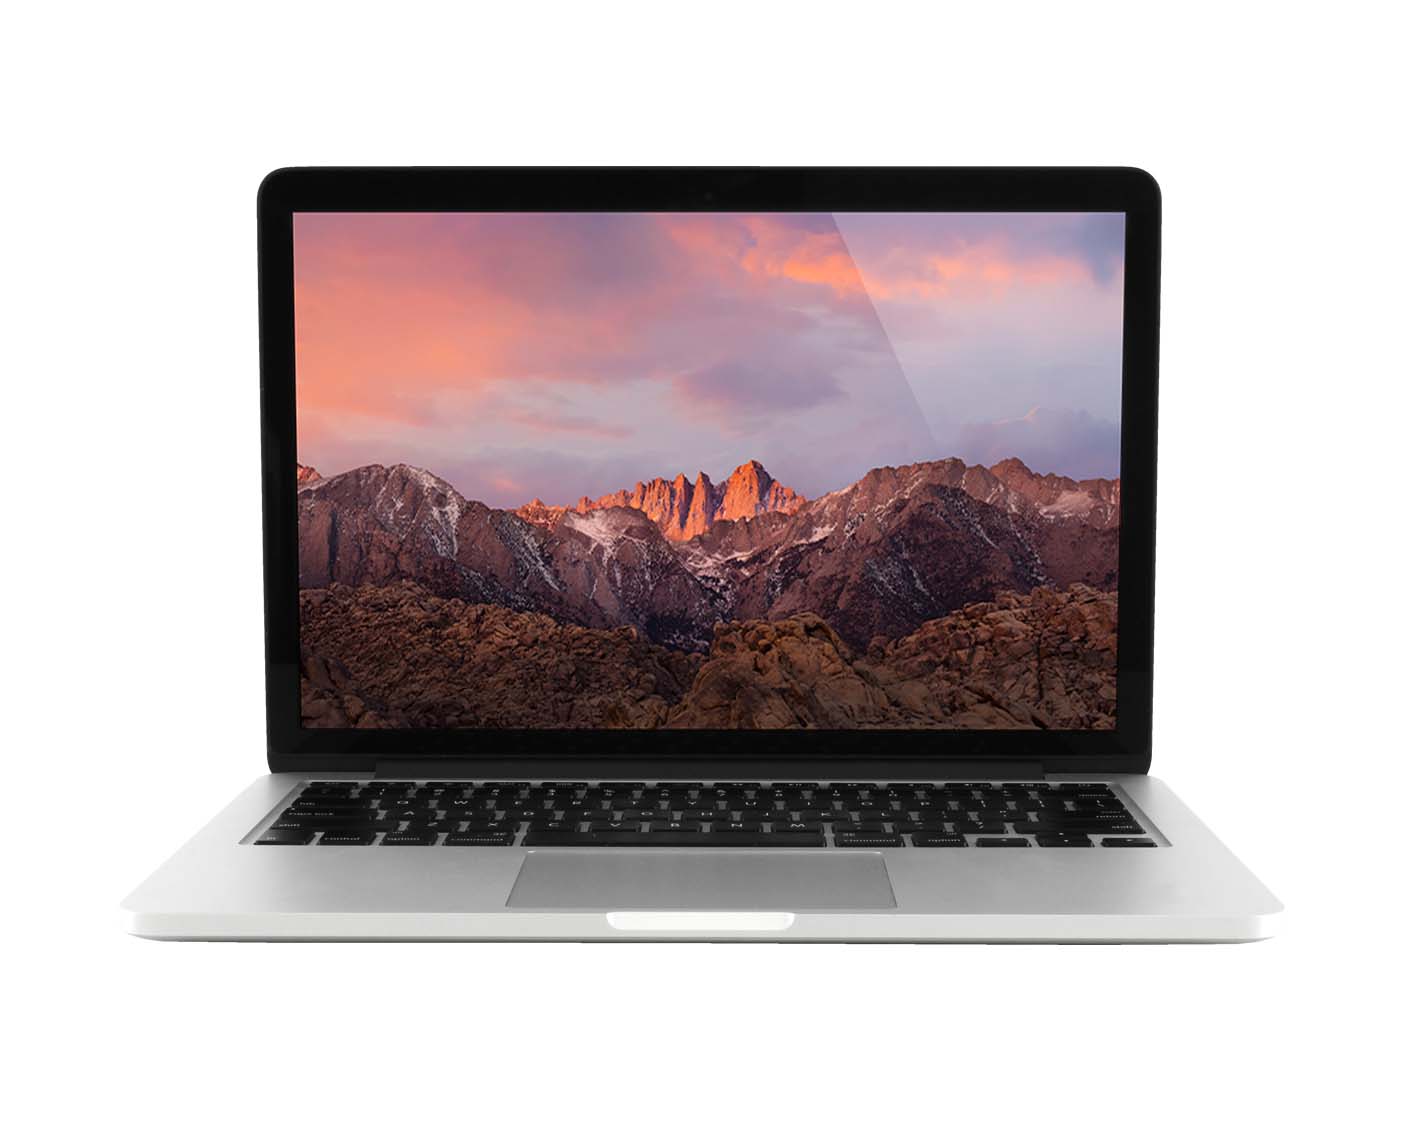 MacBook Pro Retina 13-inch Late 2013